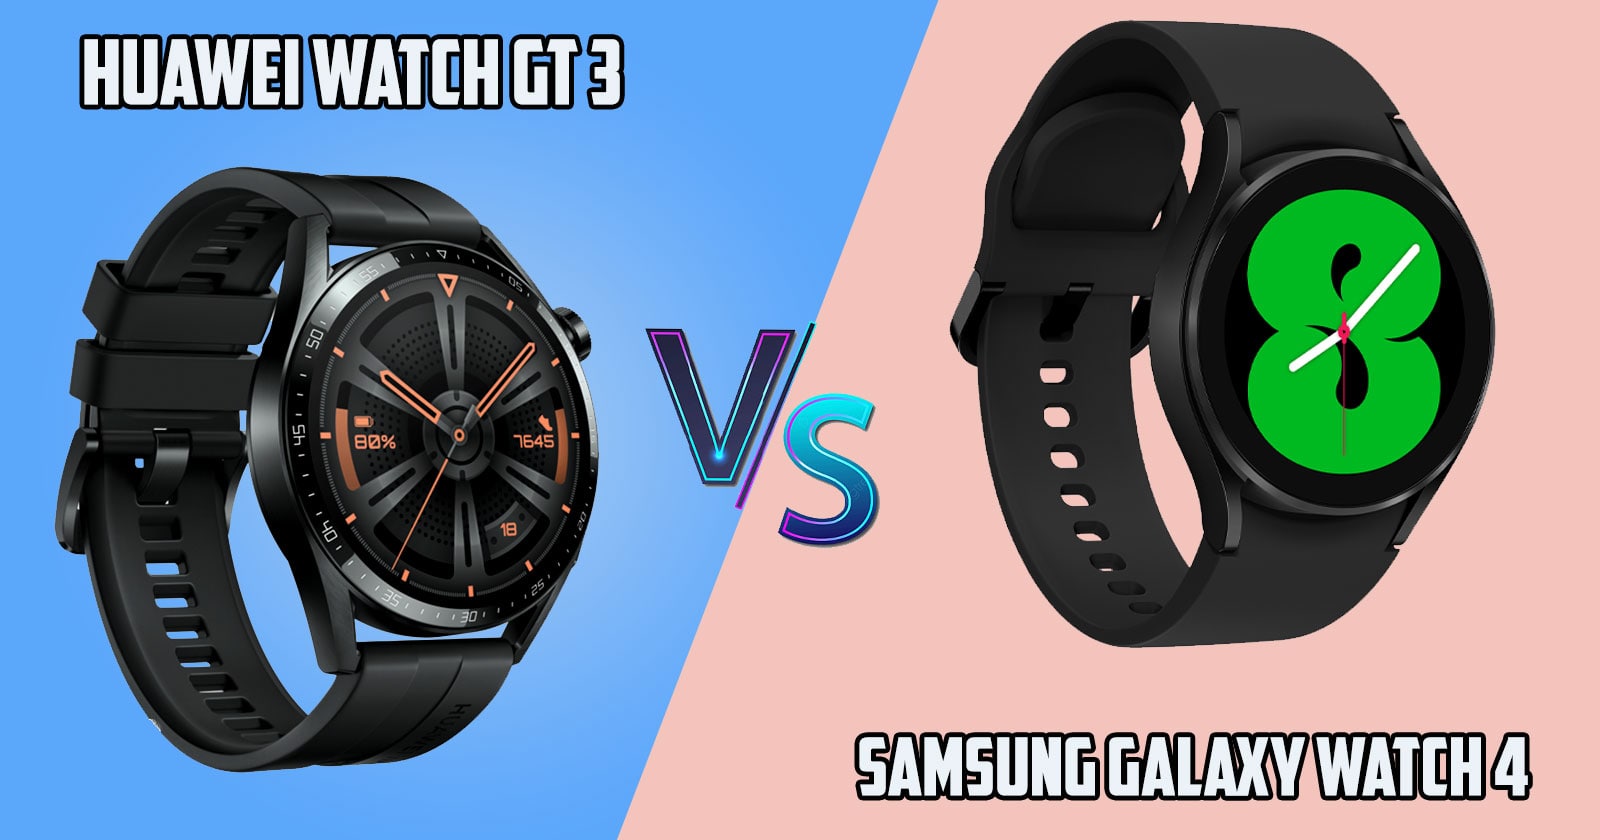 Huawei Watch GT 3 vs Samsung Galaxy Watch 4